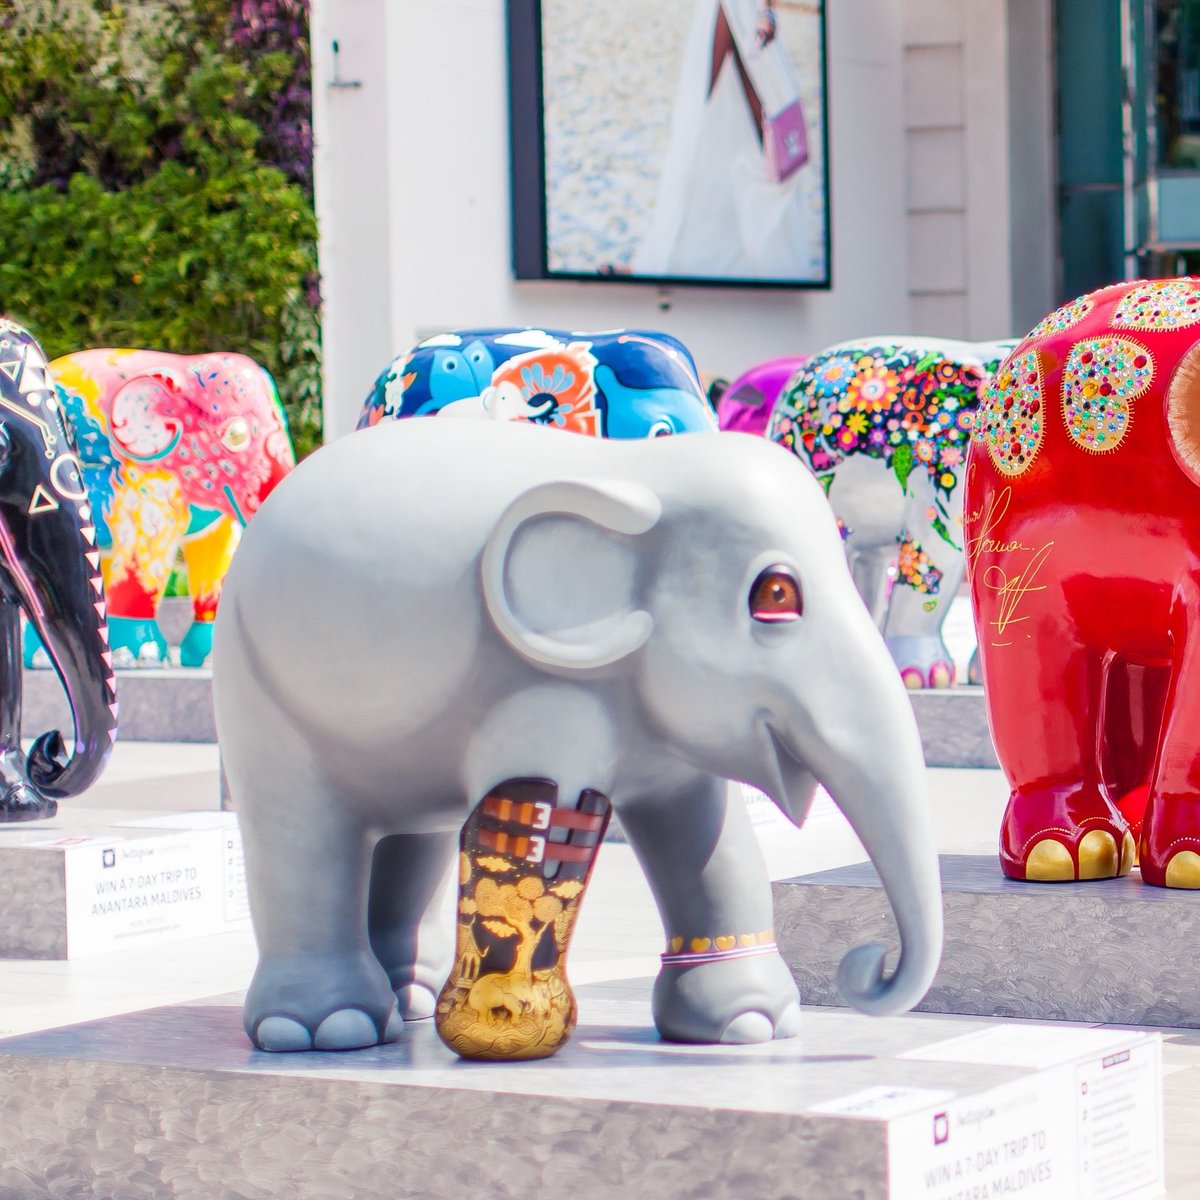 🐘 'We Love Mosha Bangkok' during Elephant Parade Bangkok, 2015 ⁠#ThrowbackThursday⁠⠀⁠ #elephantparadefan #elephantstatue #elephantparade #elephants #elephant #saveelephants #elephantlove #elephantconservation #exhibition #art